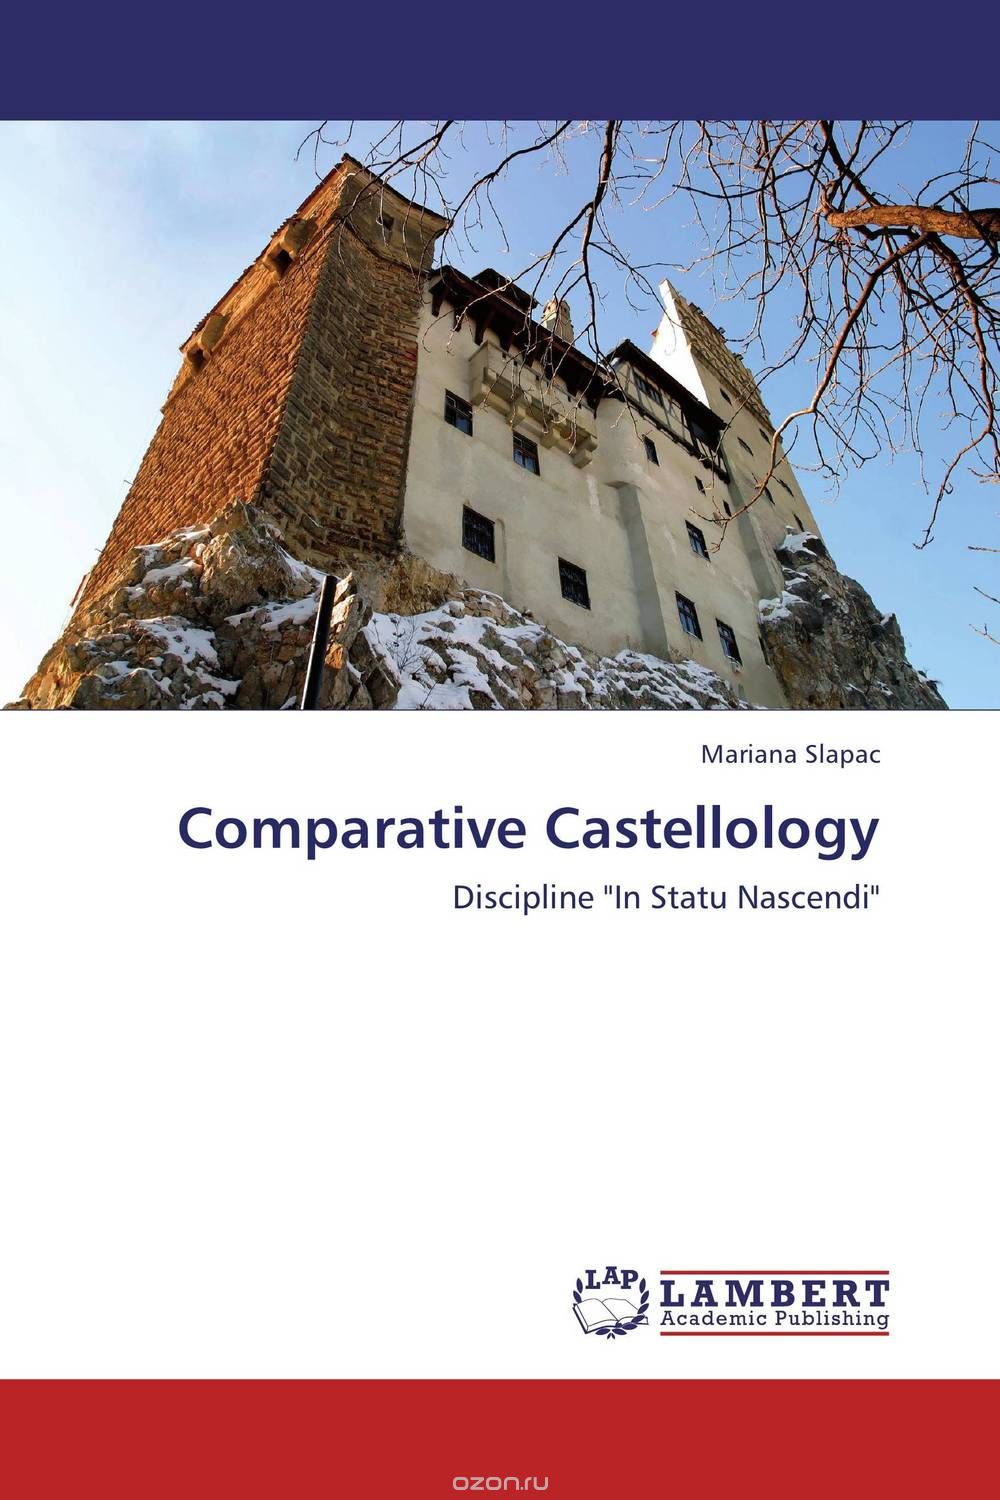 Скачать книгу "Comparative Castellology"